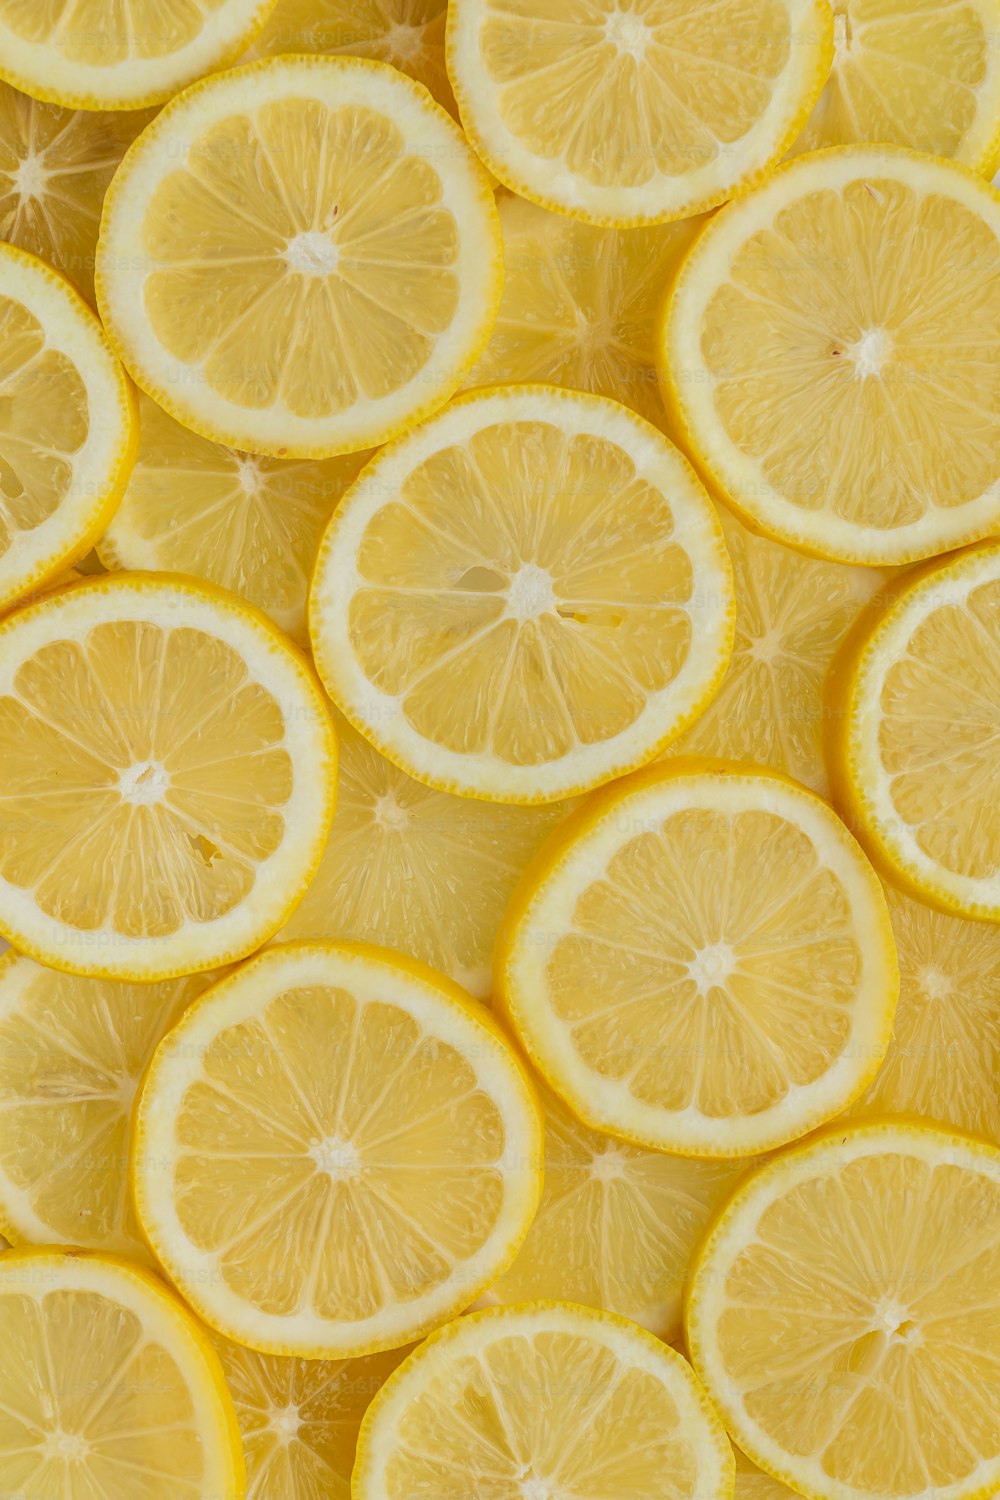 un manojo de limones que se cortan por la mitad